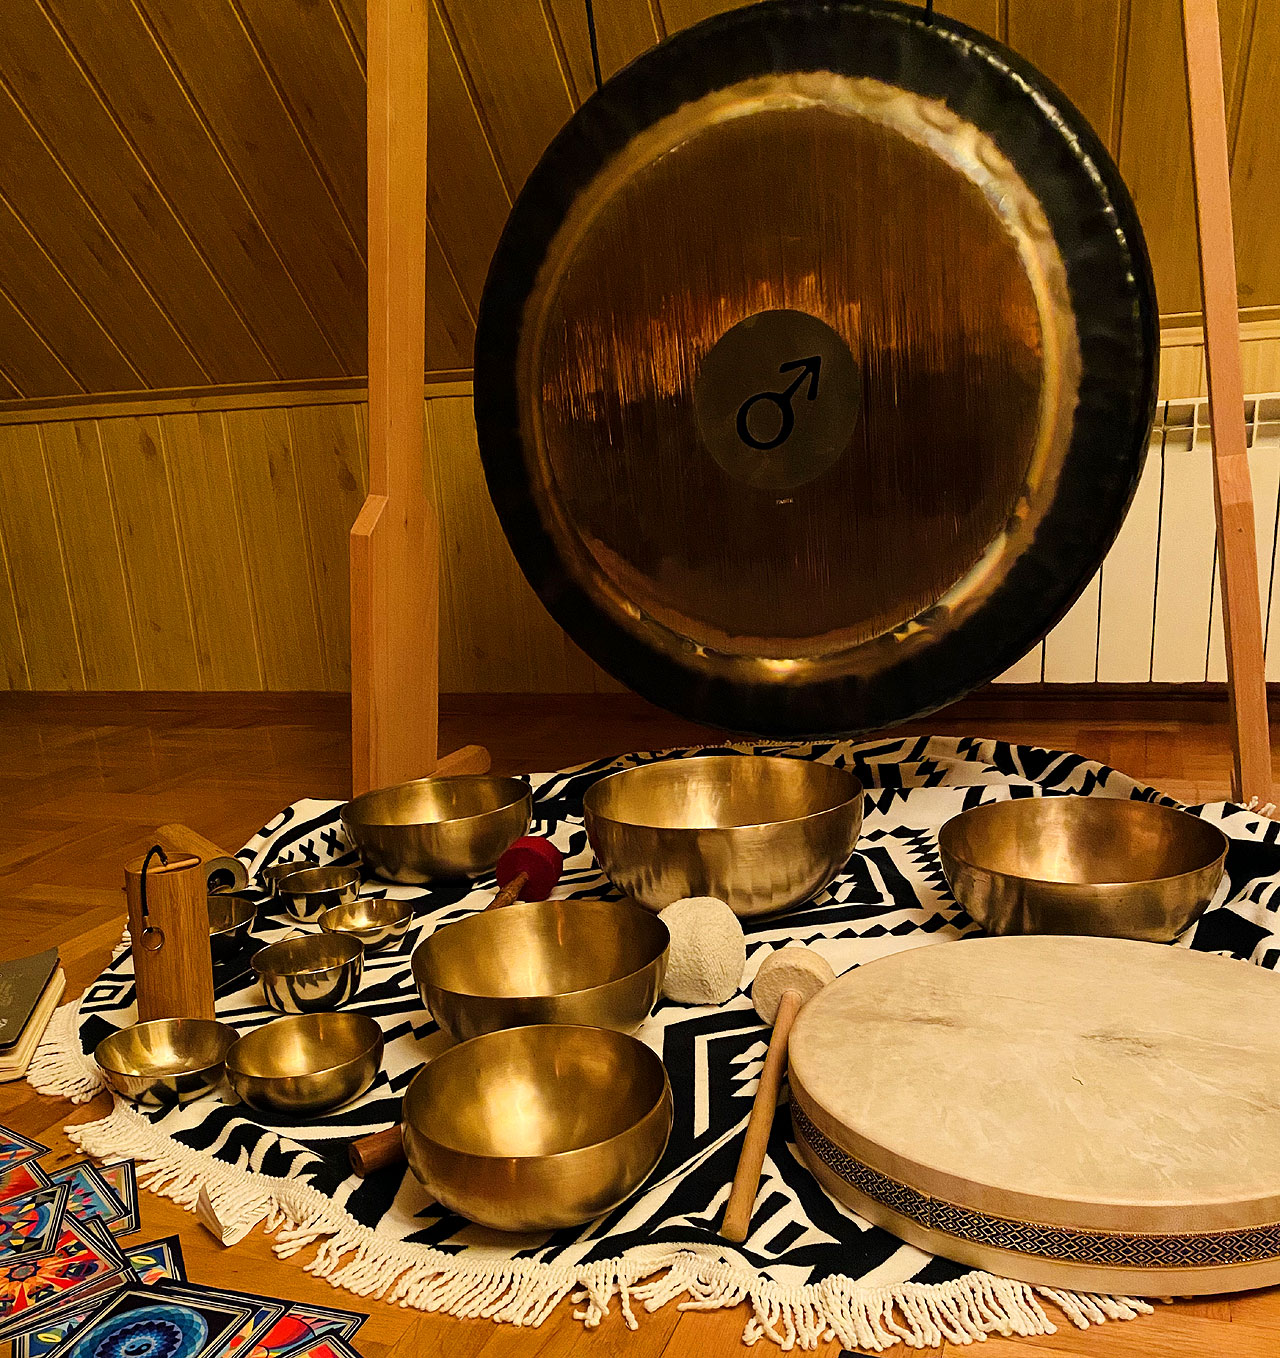 Wykąp się w dźwiękach mis i gongów tybetańskich! Jedyny taki koncert na Grabieńcu!